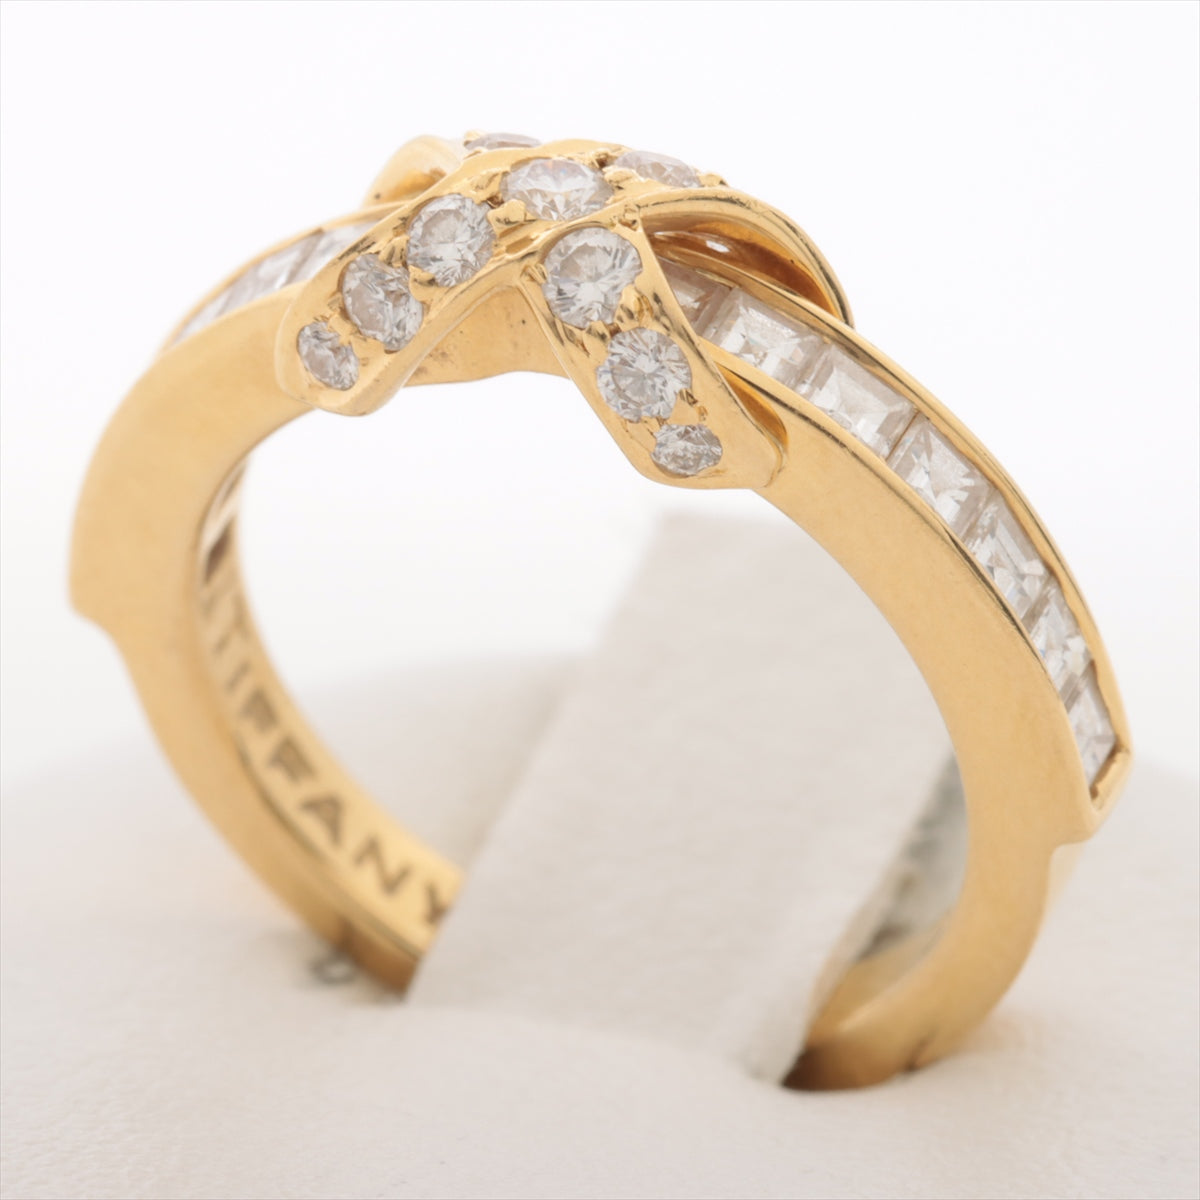 Tiffany  Diamond Ring 750 (YG) 4.2g